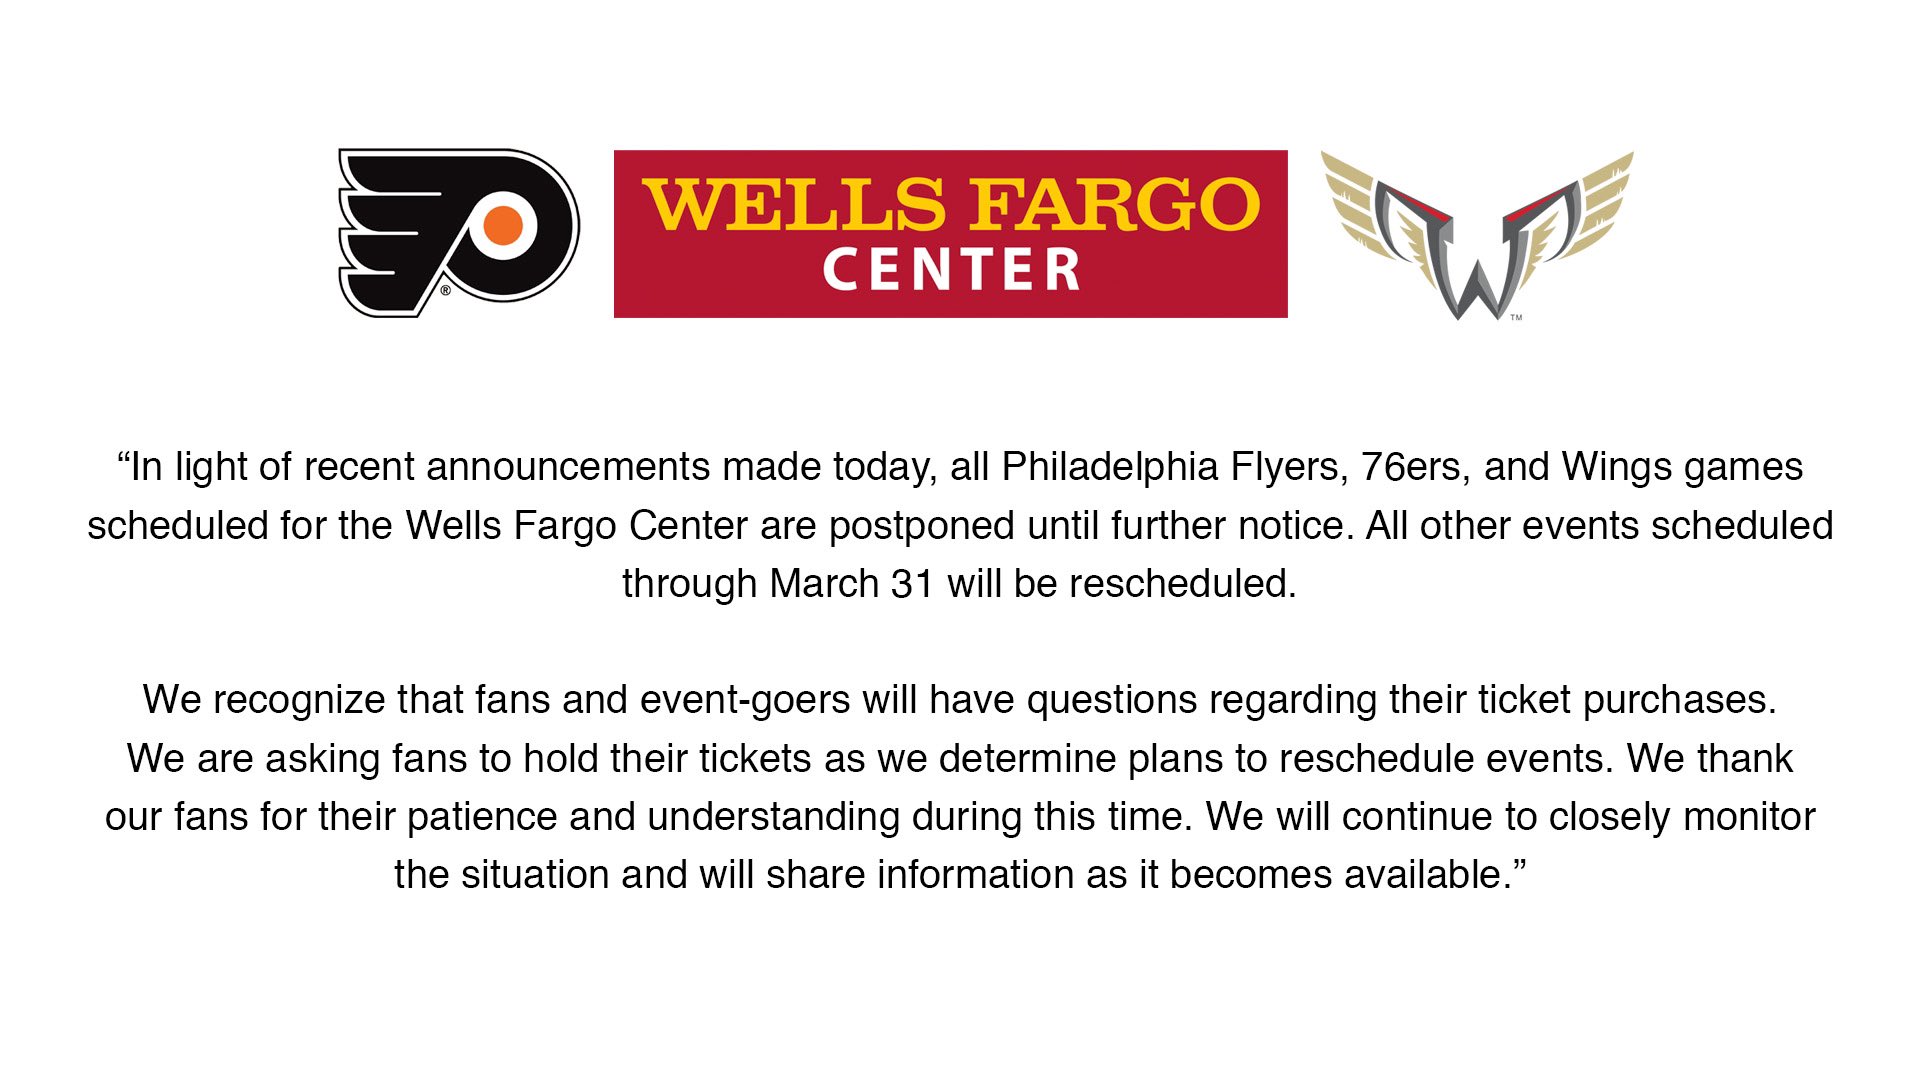 Philadelphia's Comcast Spectacor will resume Wells Fargo Center